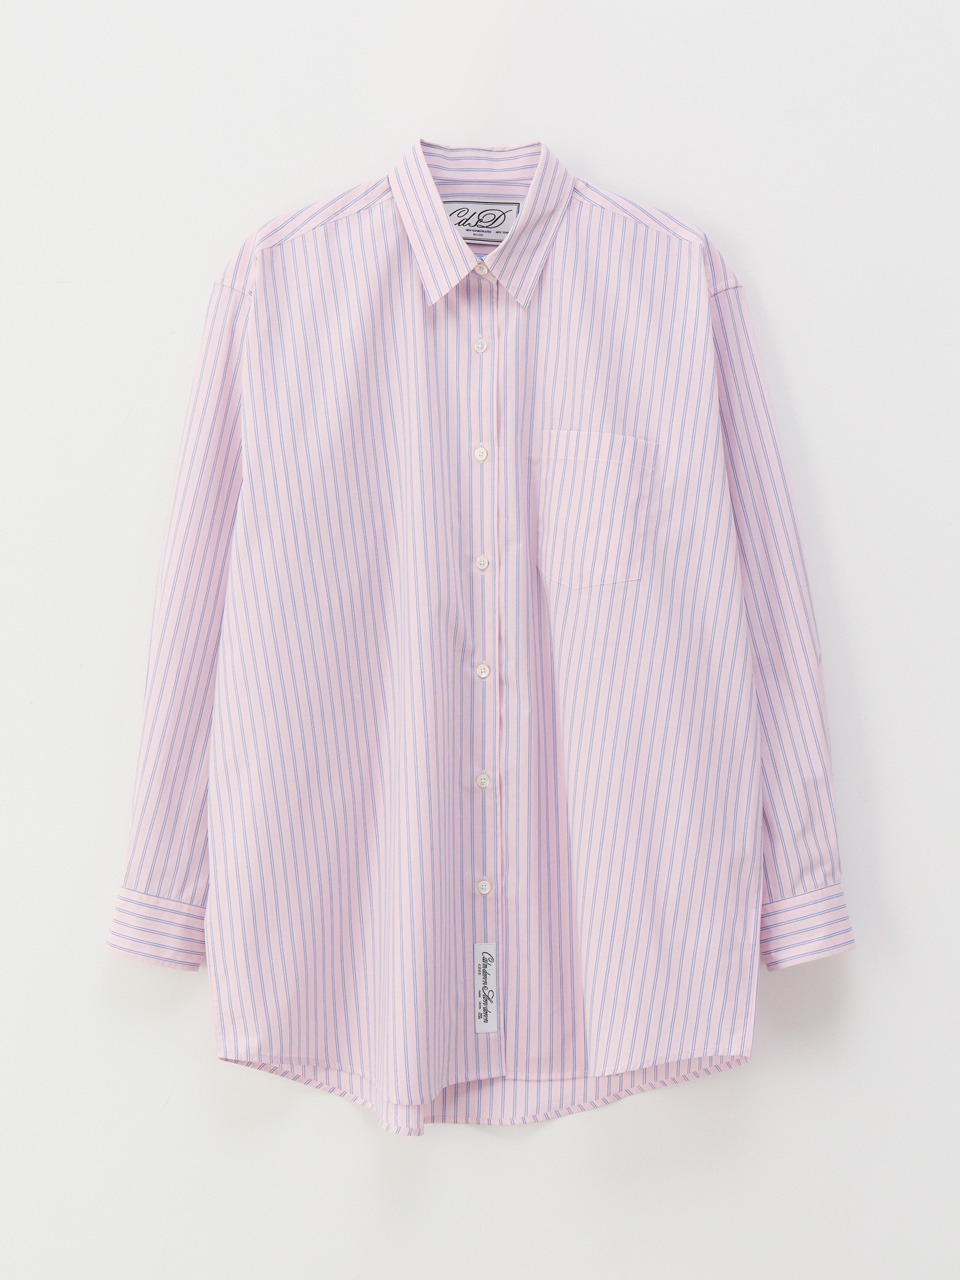 Signature oversize shirts_pink stripe